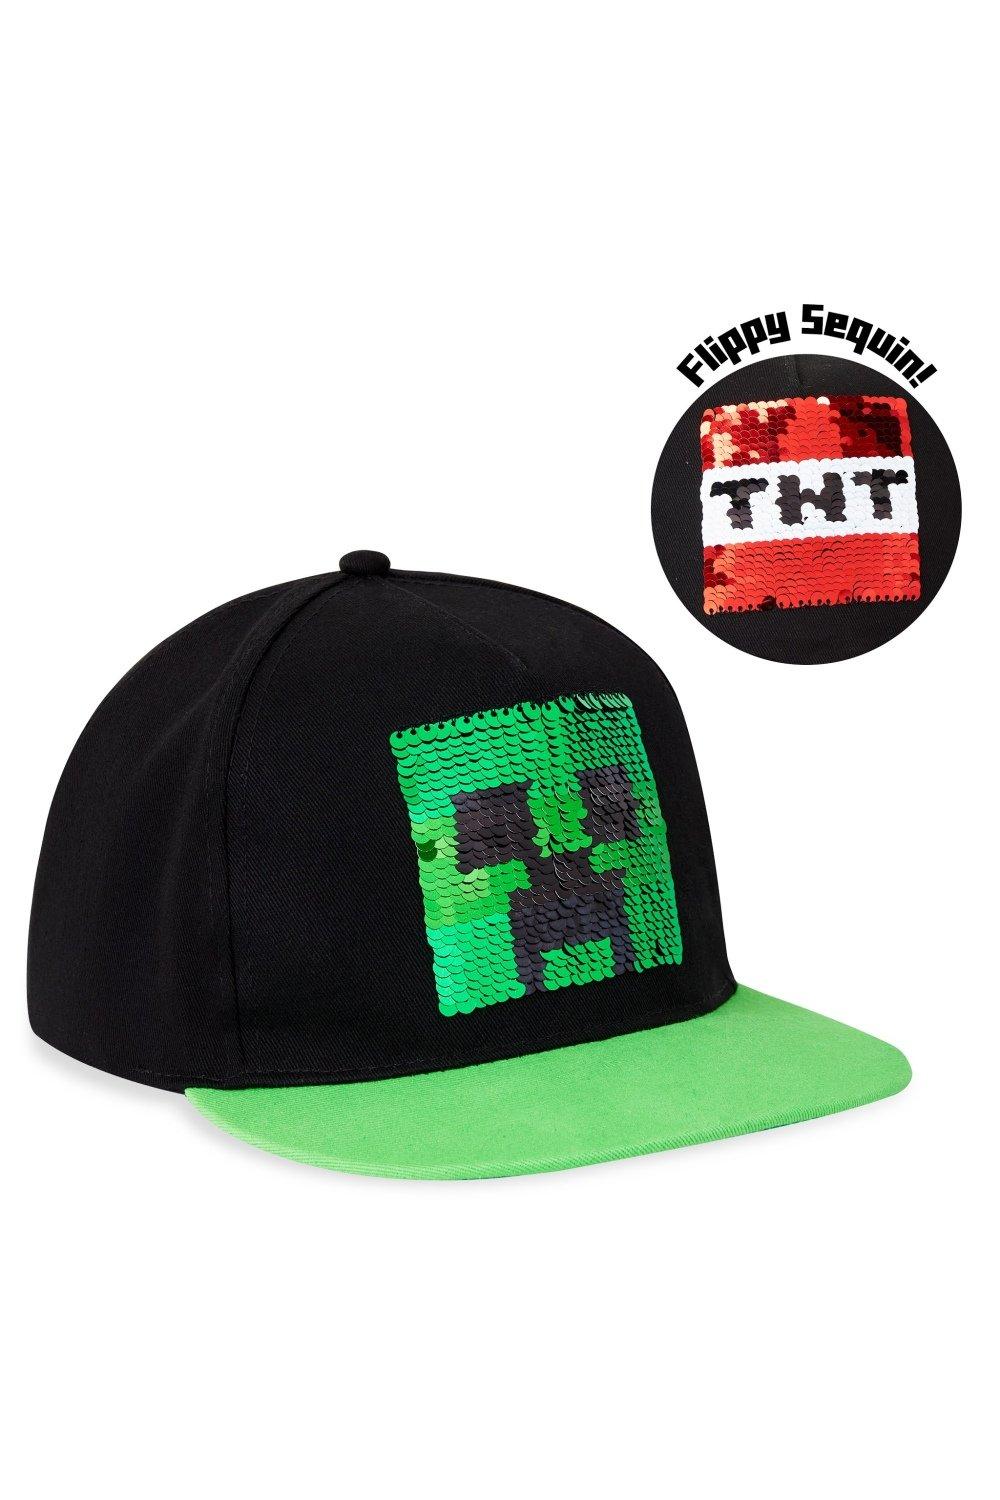 Двусторонняя кепка с пайетками, зеленая Minecraft, мультиколор кепка мужская спортивная с длинным козырьком модная бейсболка с затенением козырька для рыбы летняя